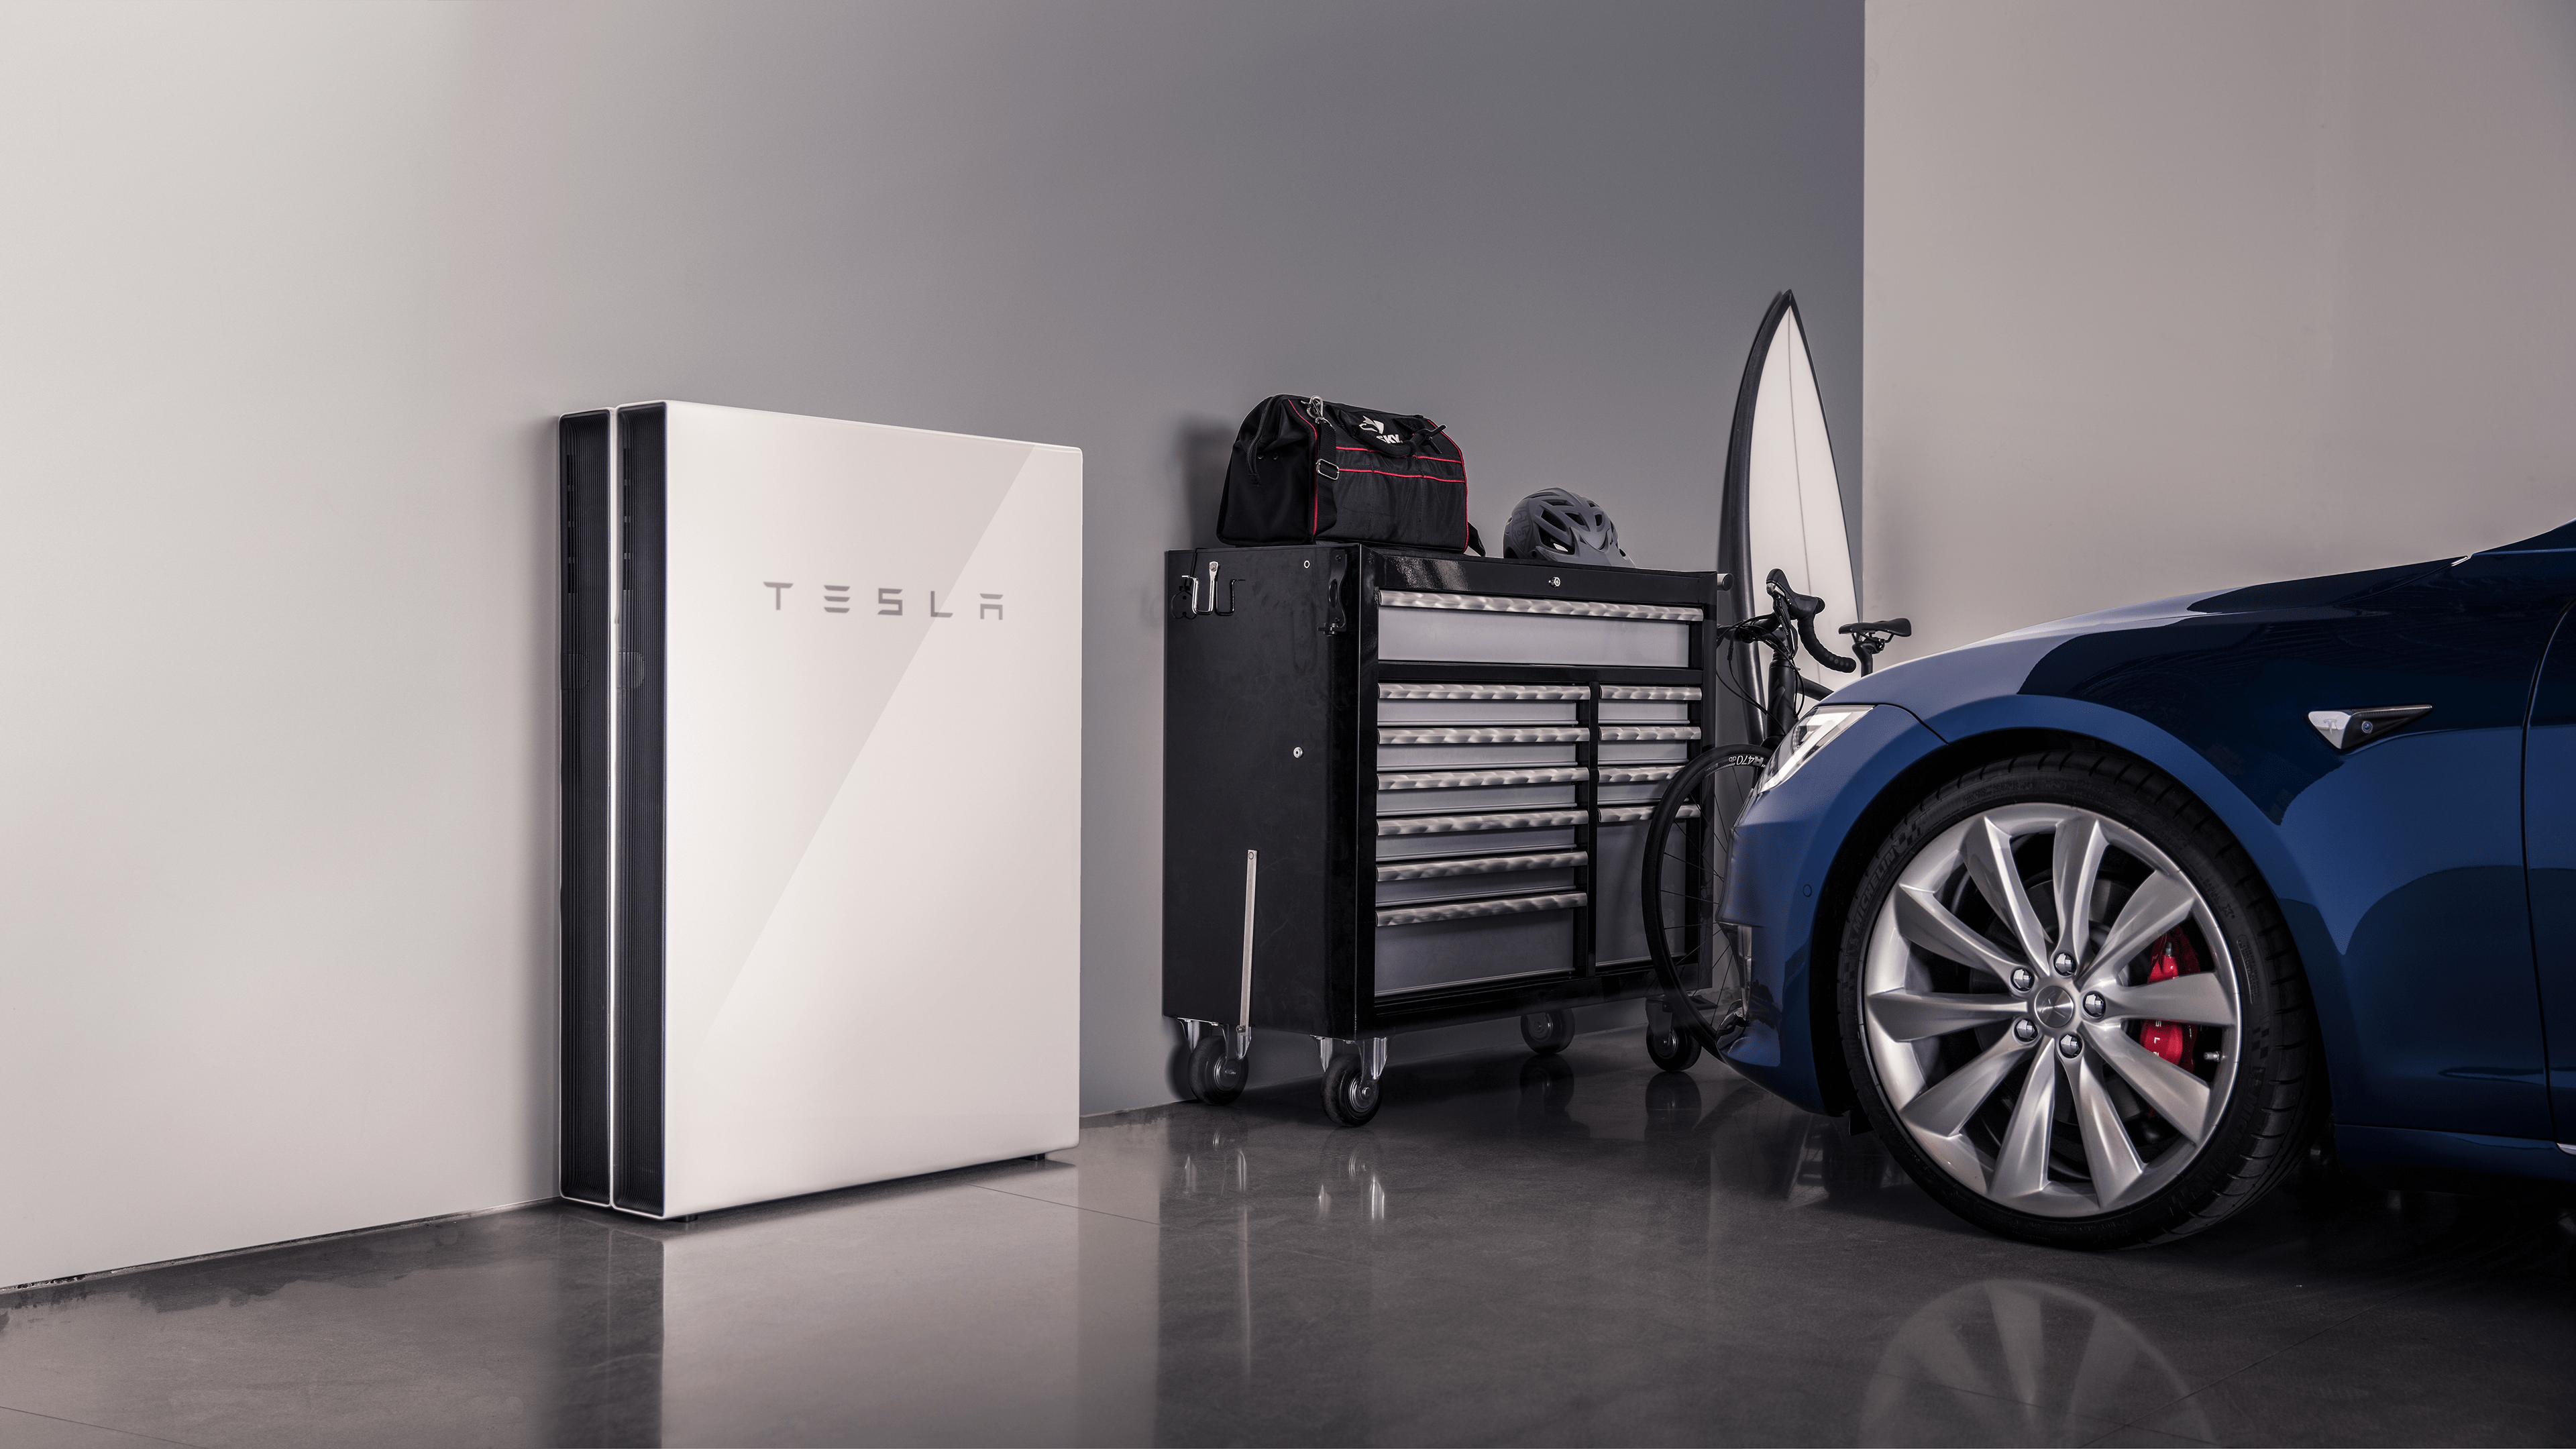 Tesla Powerwall 2: Yang perlu anda ketahui mengenai bateri rumah Elon Musk